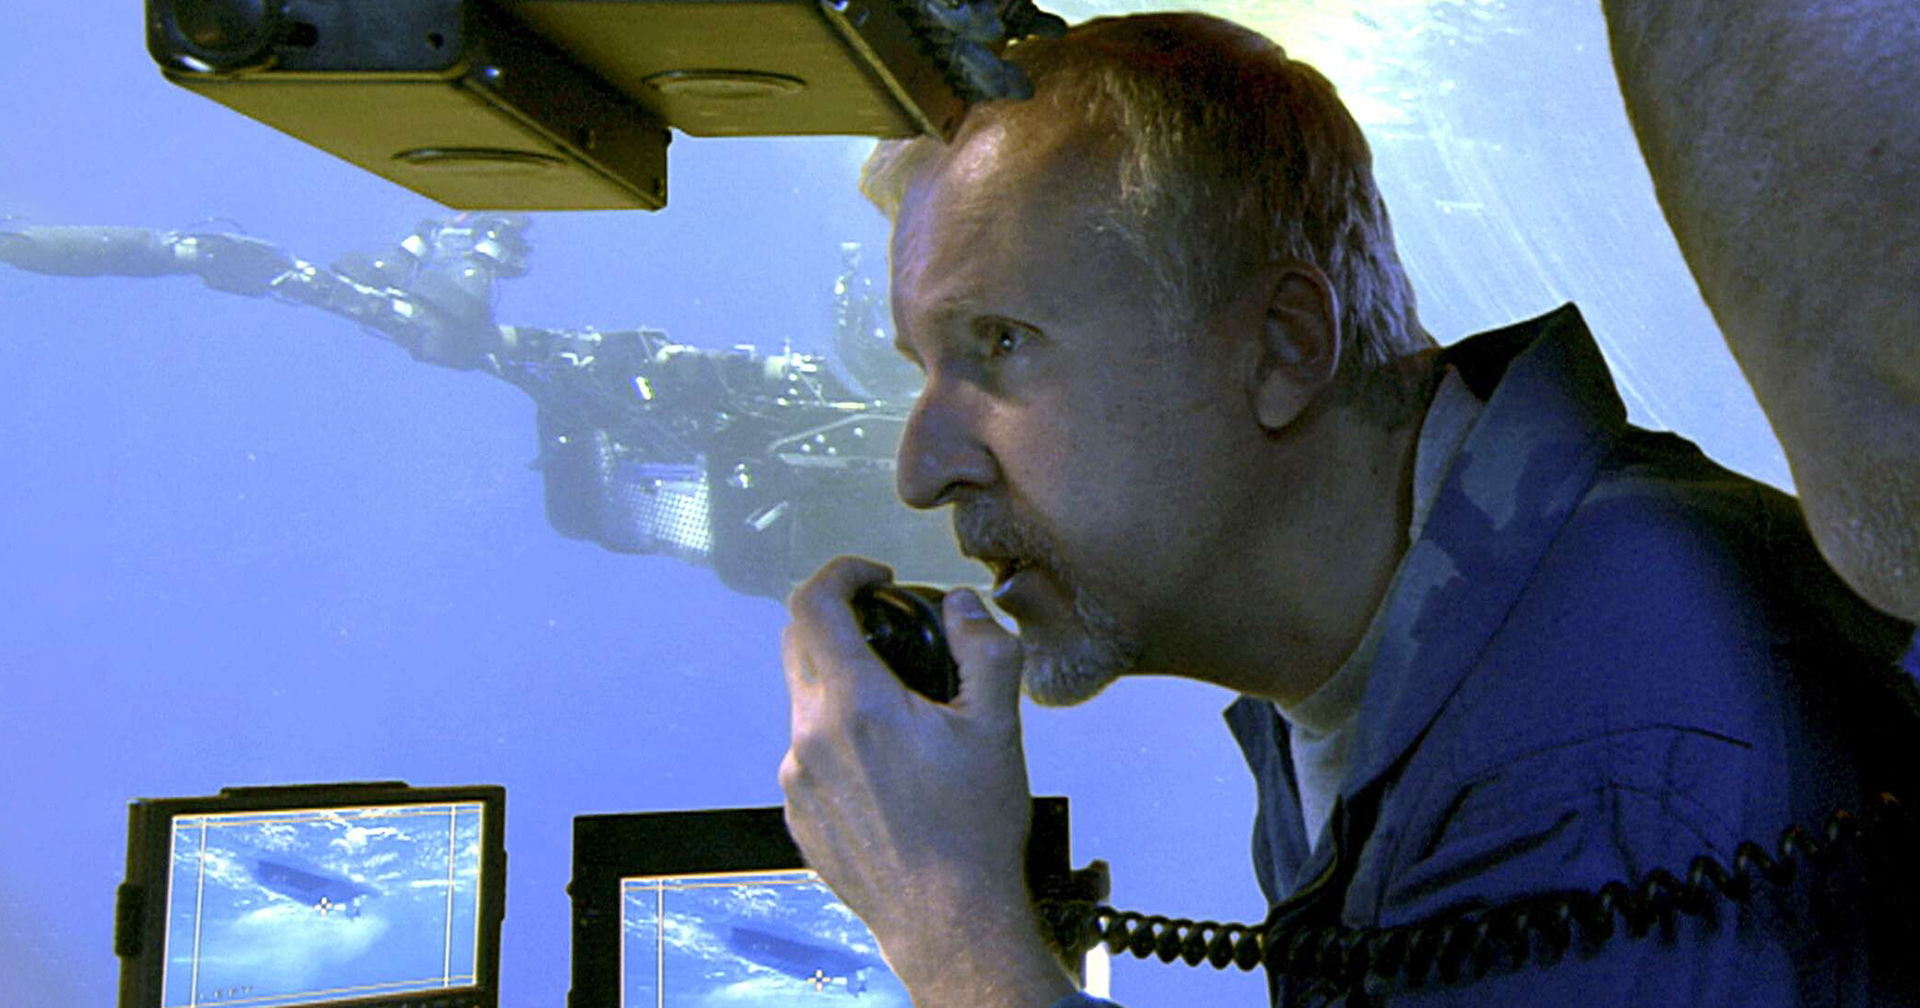 James Cameron ชี้ โศกนาฏกรรมเรือดำน้ำไททัน คล้ายเหตุ Titanic ล่มเพราะละเลยความปลอดภัย